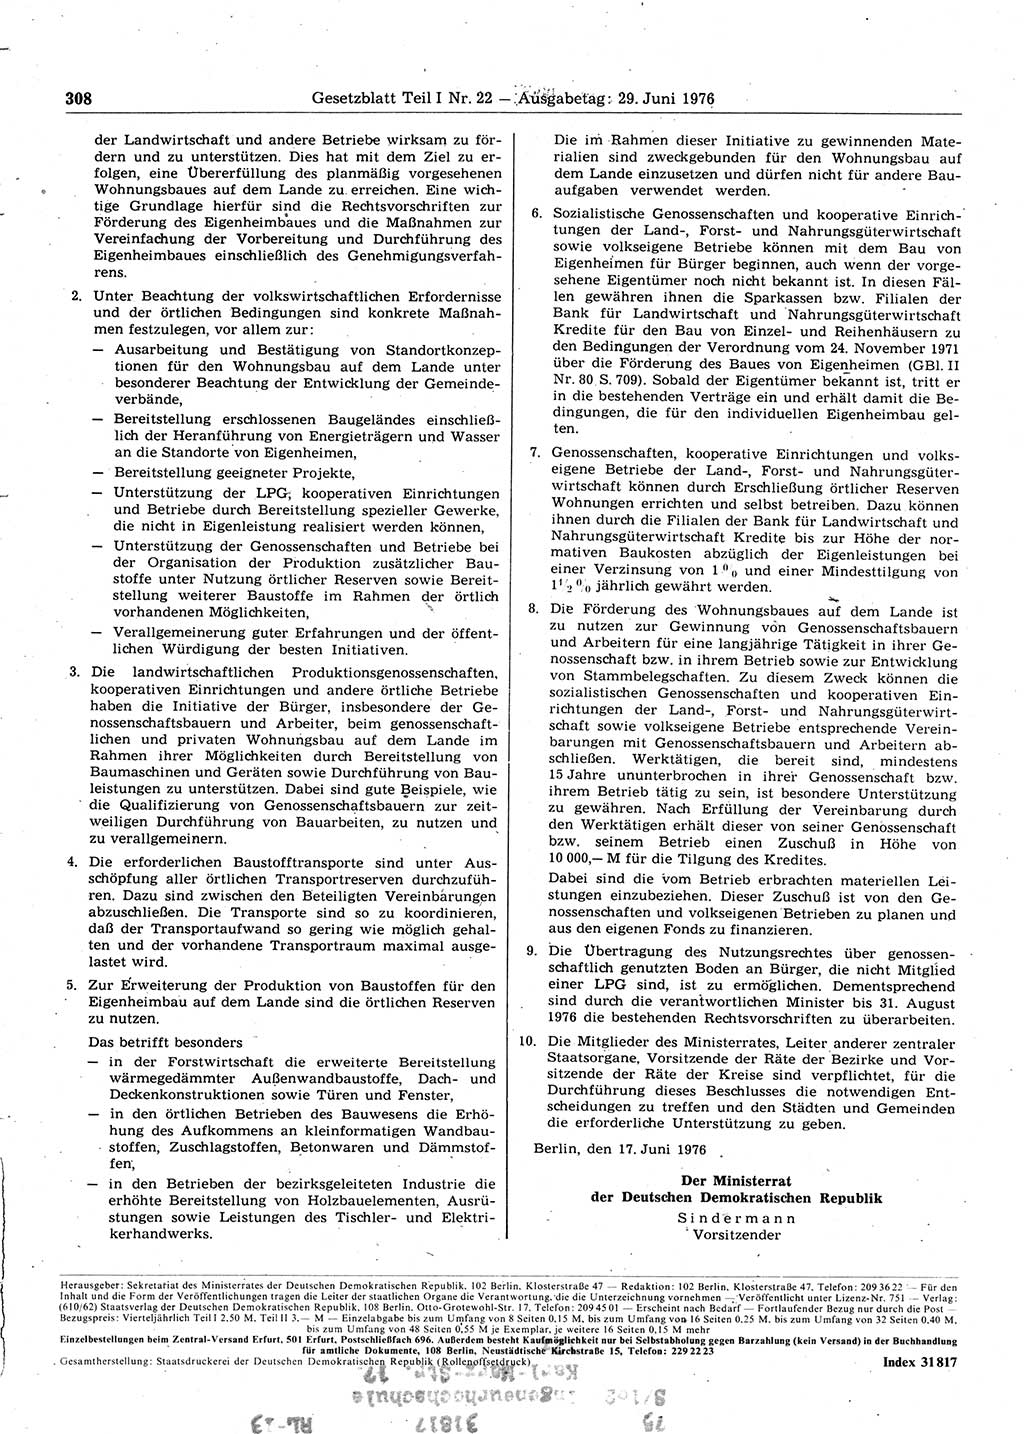 Gesetzblatt (GBl.) der Deutschen Demokratischen Republik (DDR) Teil Ⅰ 1976, Seite 308 (GBl. DDR Ⅰ 1976, S. 308)